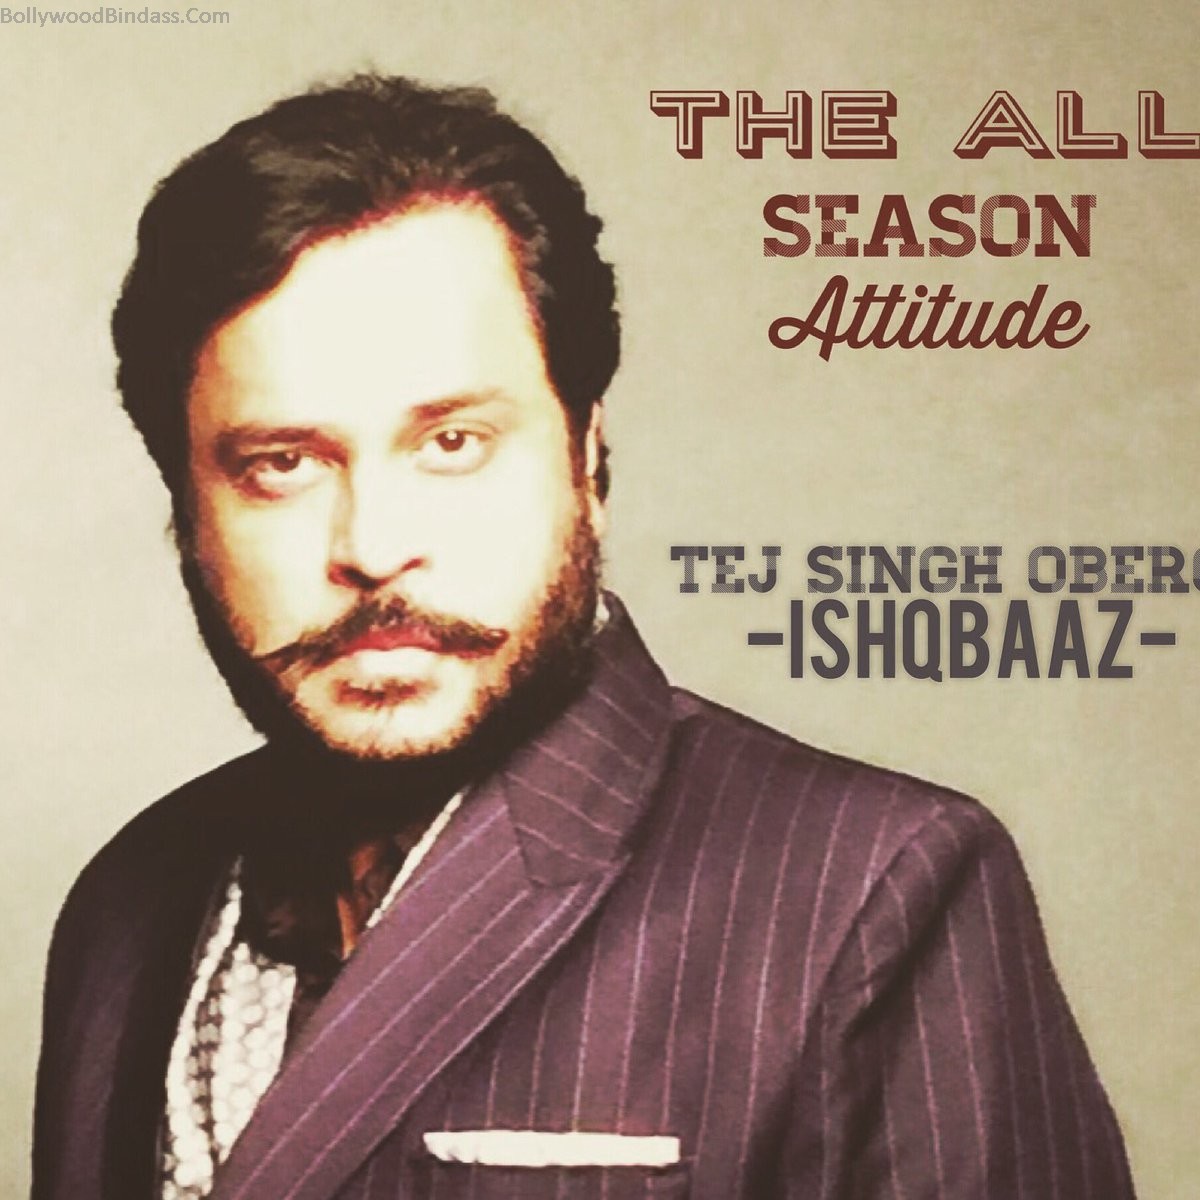 fond d'écran ishqbaaz série,couverture de l'album,texte,barbe,affiche,police de caractère